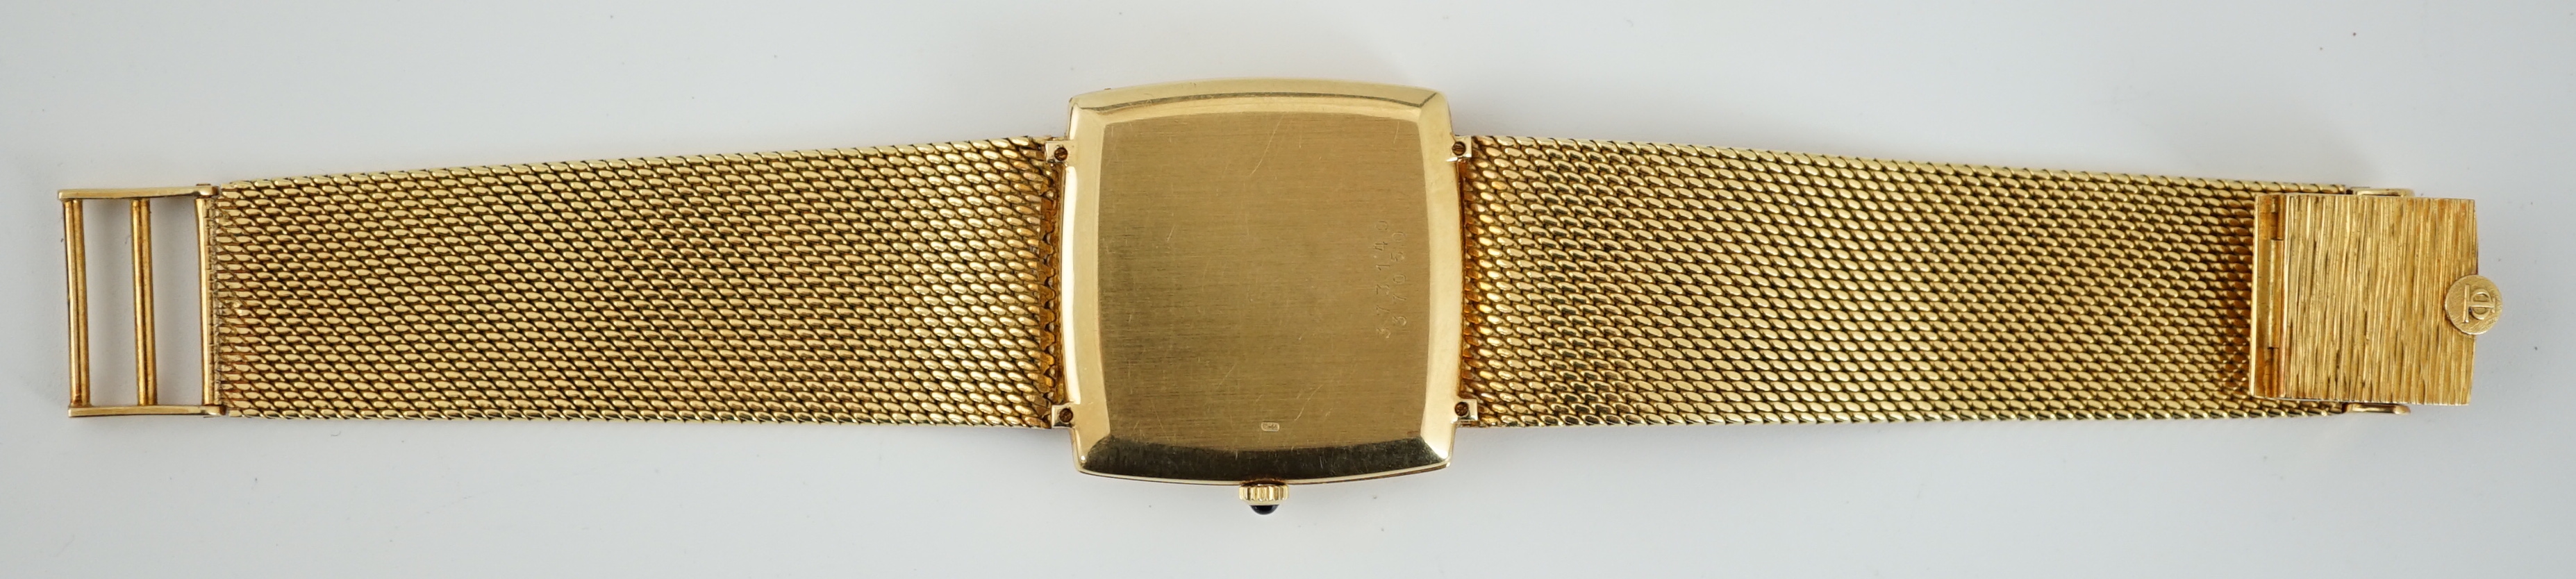 A gentleman's 1980's 18ct gold Baume & Mercier Baumatic dress wrist watch